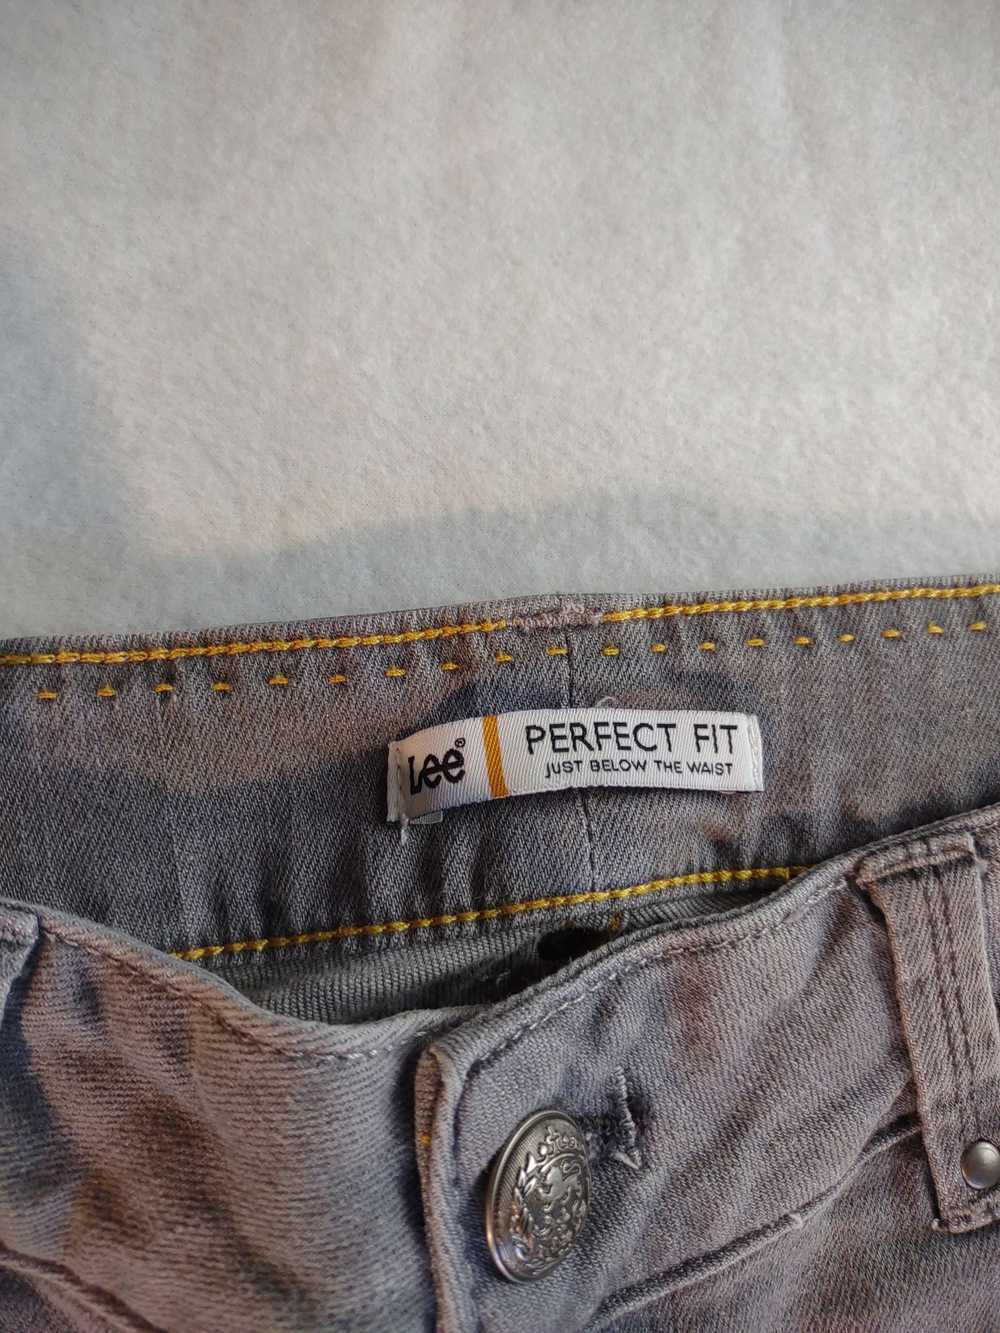 Lee Lee Perfect Fit Just Below Waist denim jeans … - image 10